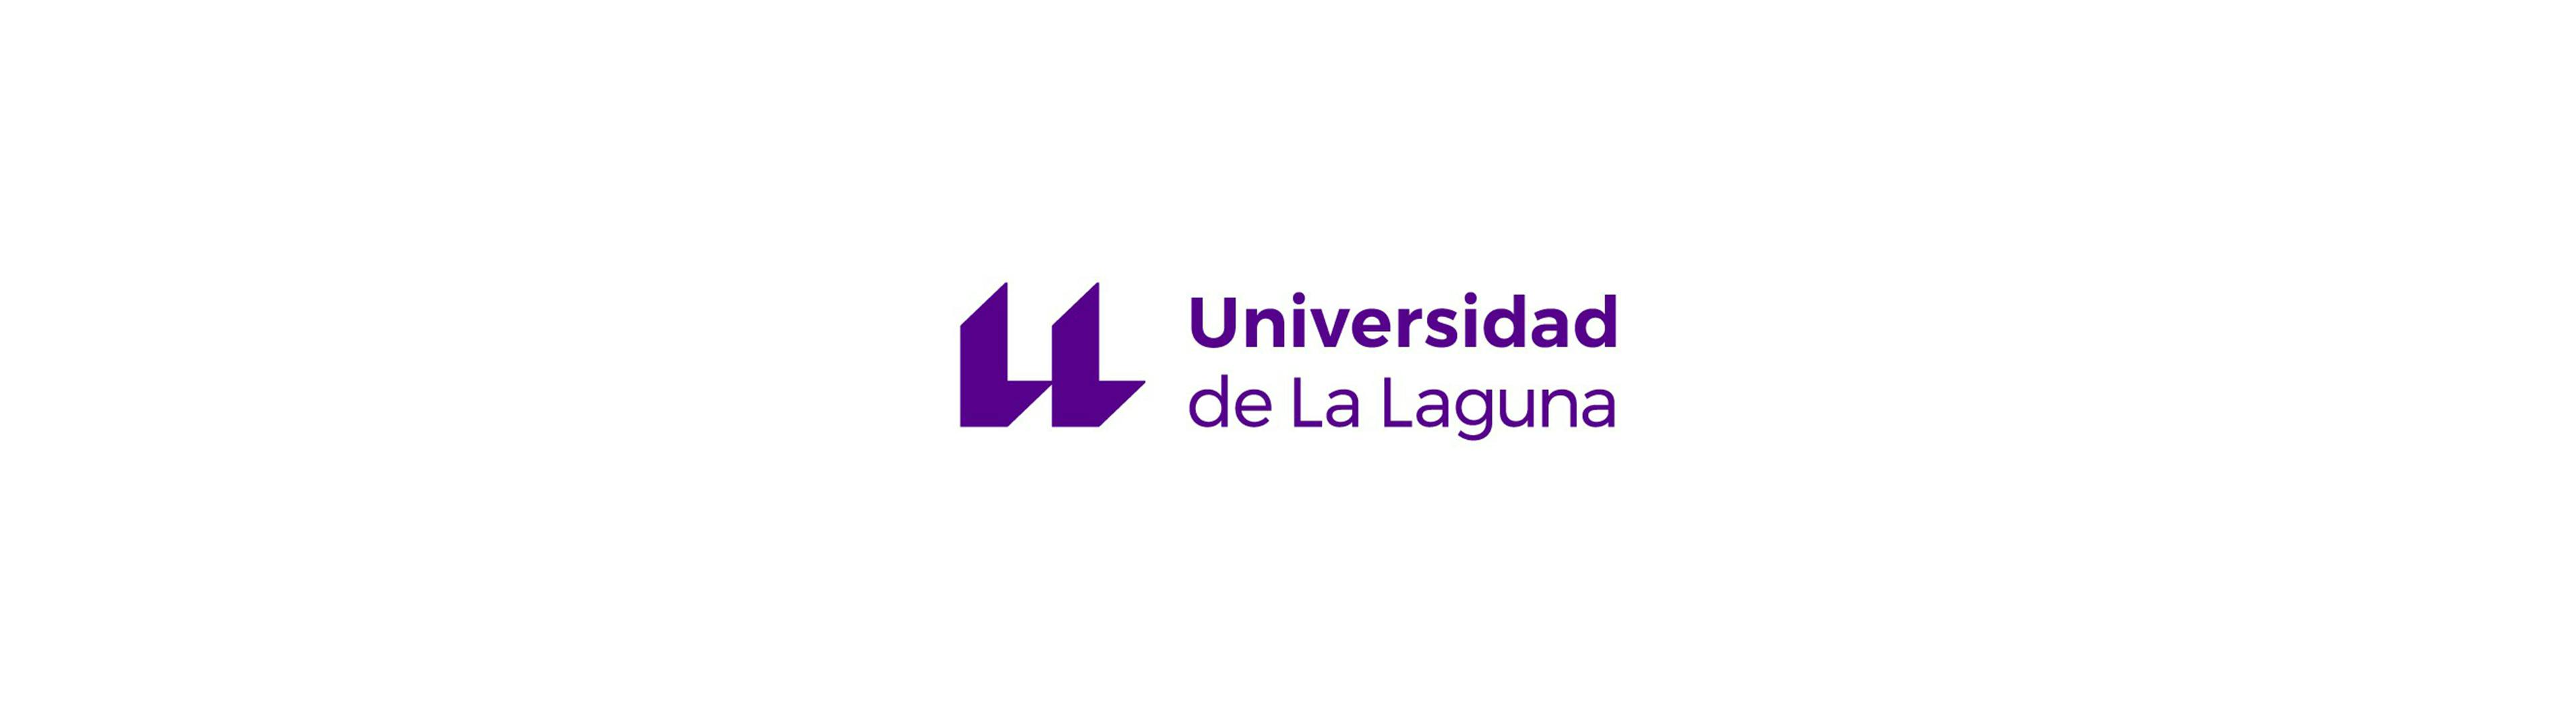 Logo dell'Università de La Laguna: due "L" affiancate che somigliano a due virgolette aperte, con a fianco la scritta "Universidad de La Laguna".